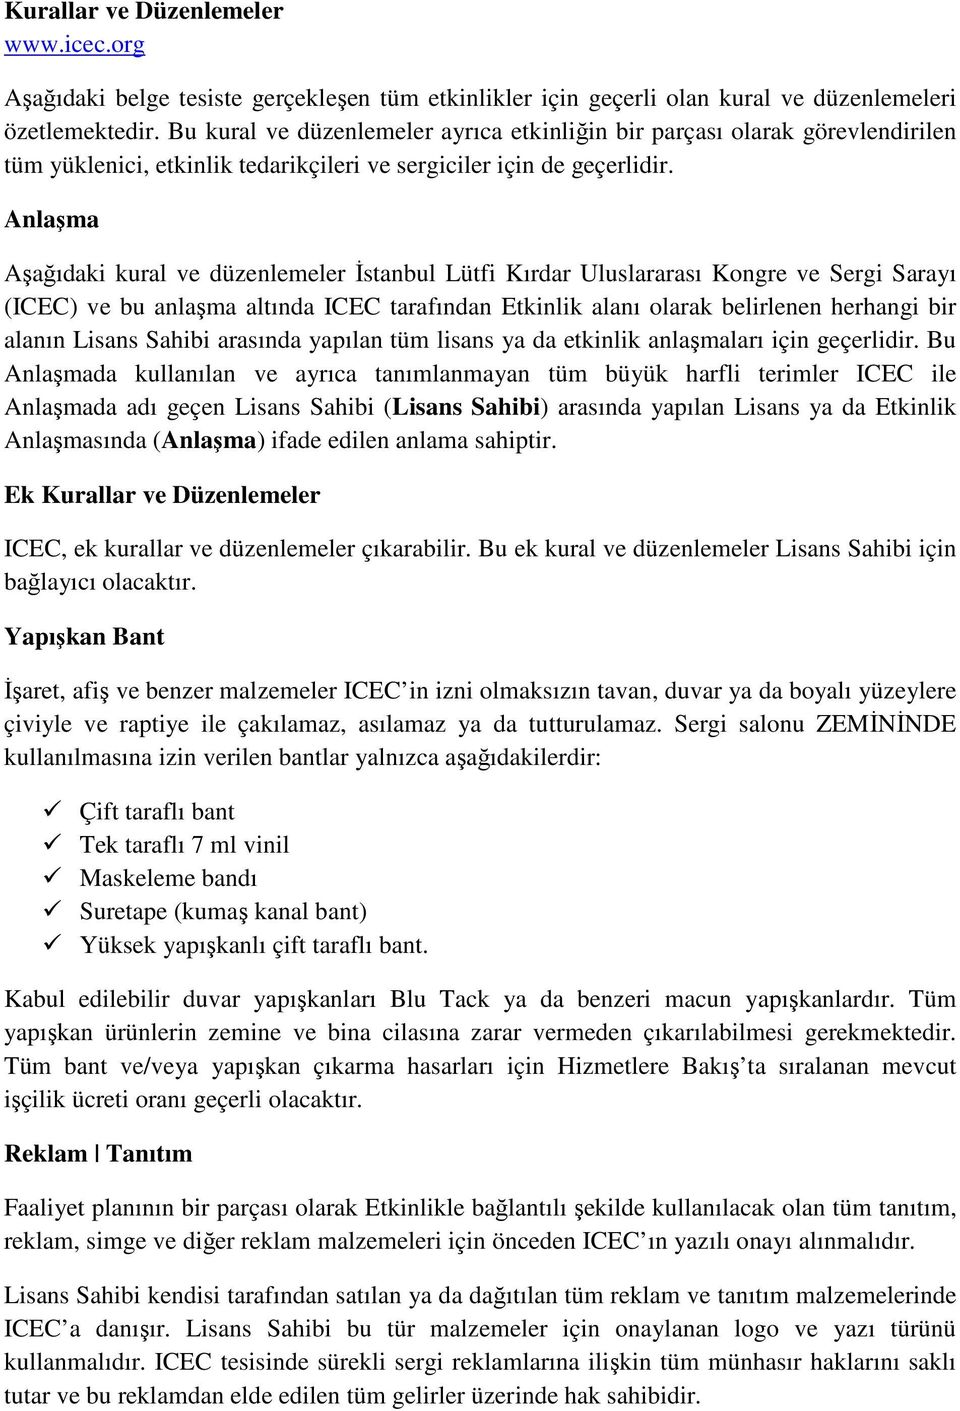 Anlaşma Aşağıdaki kural ve düzenlemeler İstanbul Lütfi Kırdar Uluslararası Kongre ve Sergi Sarayı (ICEC) ve bu anlaşma altında ICEC tarafından Etkinlik alanı olarak belirlenen herhangi bir alanın